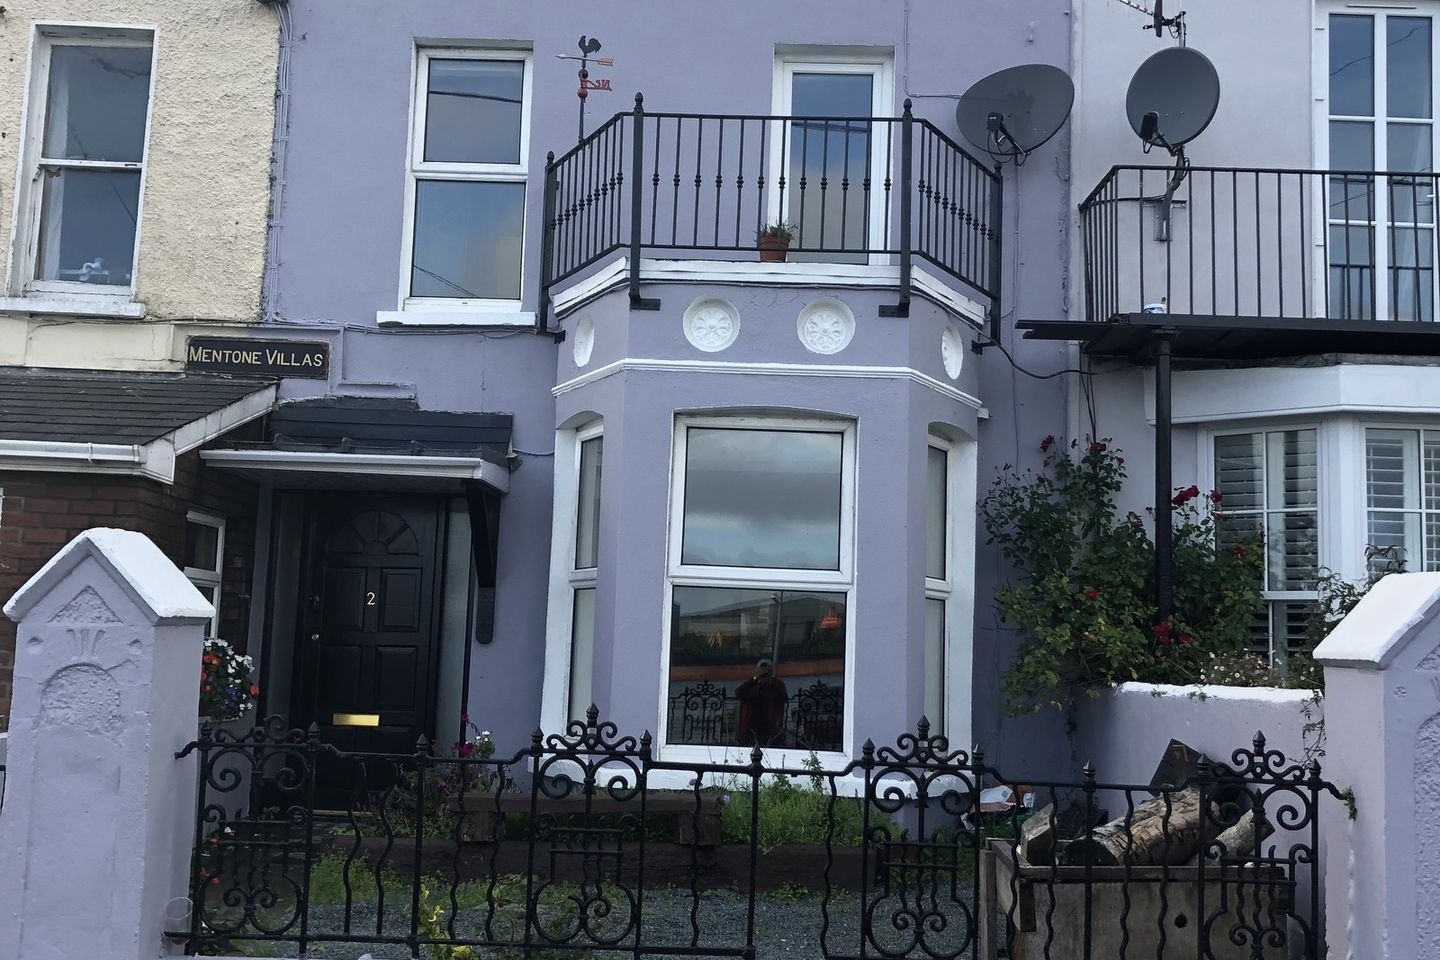 2 Mentone Villas, Strand Road, Monkstown, Co. Cork, T12VW8D